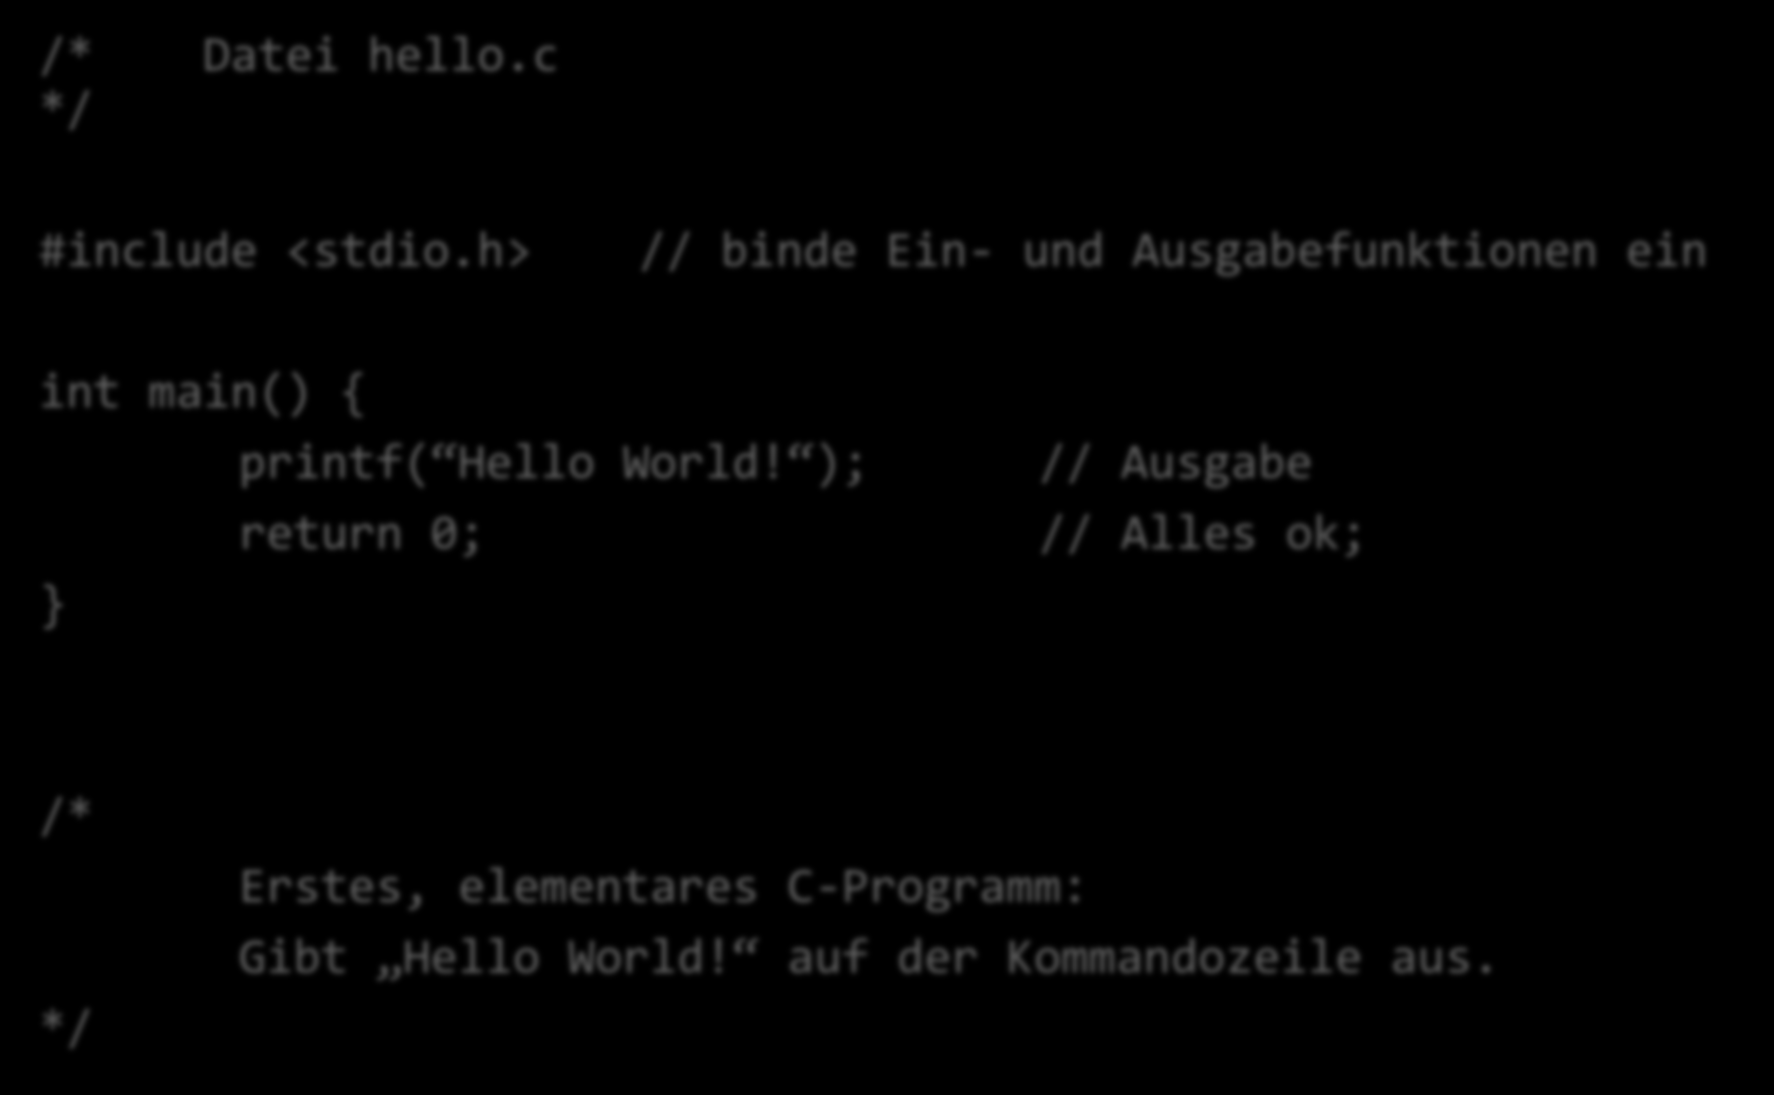 Hello World! /* Datei hello.c */ #include <stdio.